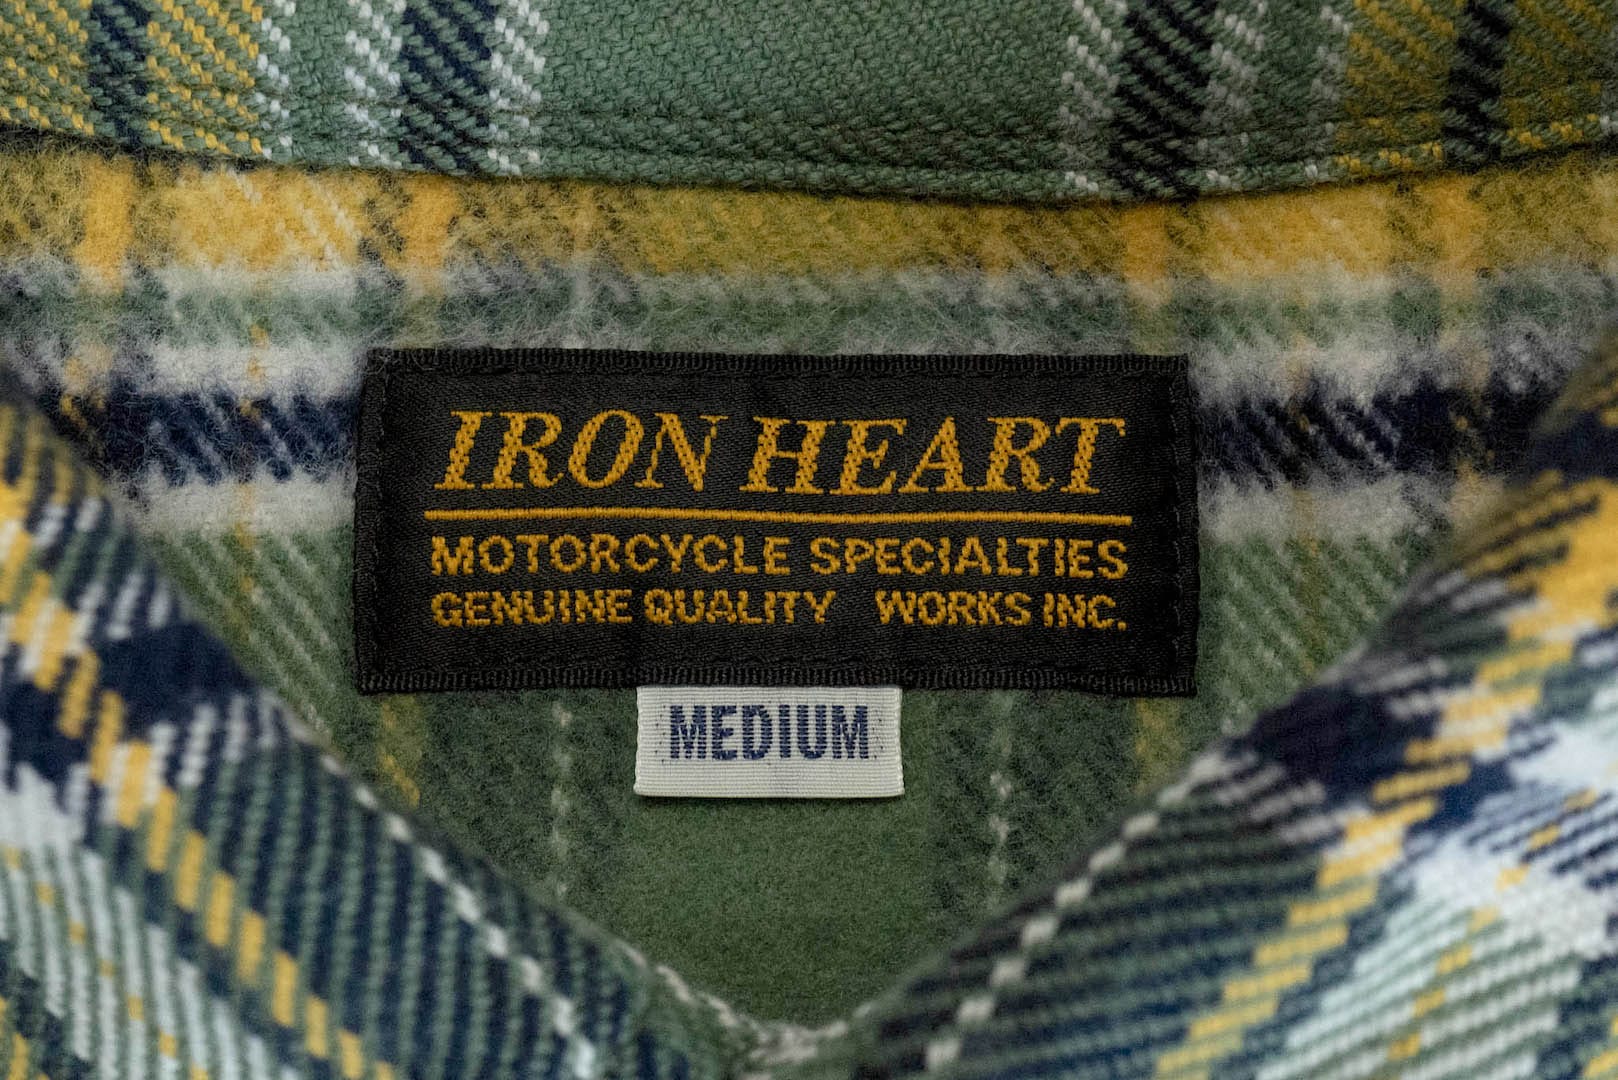 Iron Heart Ultra-Heavy Flannel Tartan Check Western Shirt (Wheat Grass)